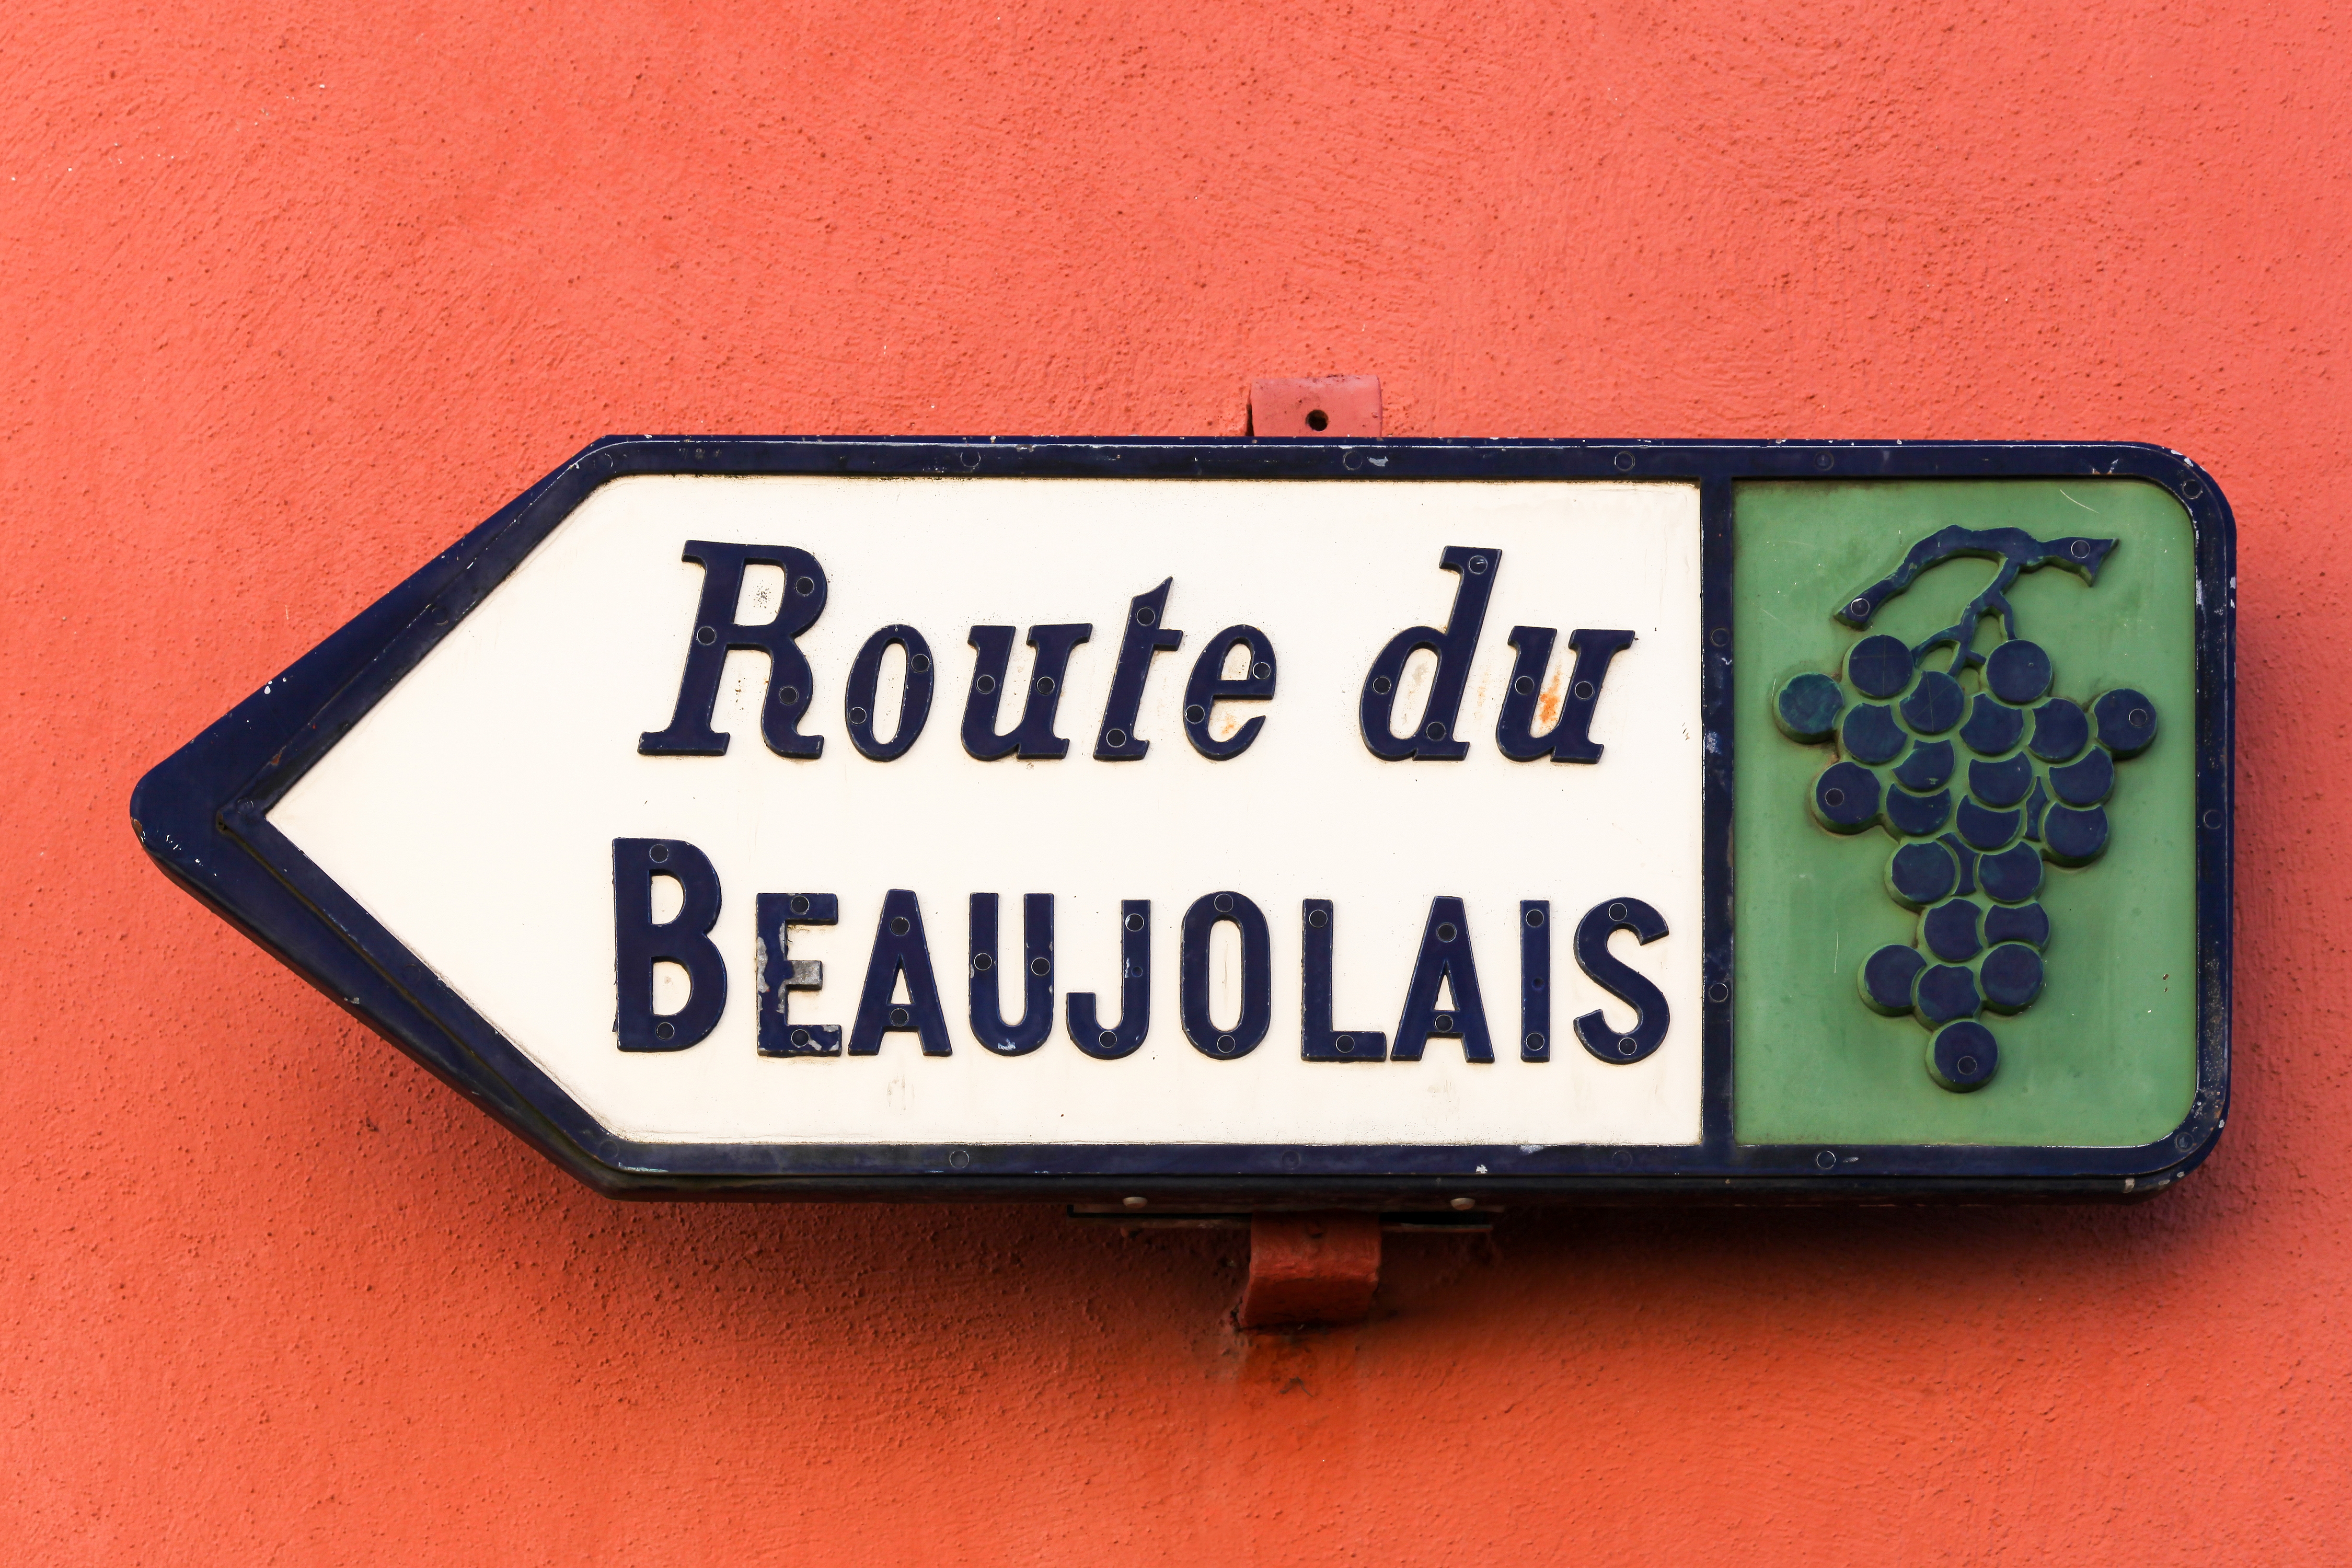 Route du Beaujolais sign, France